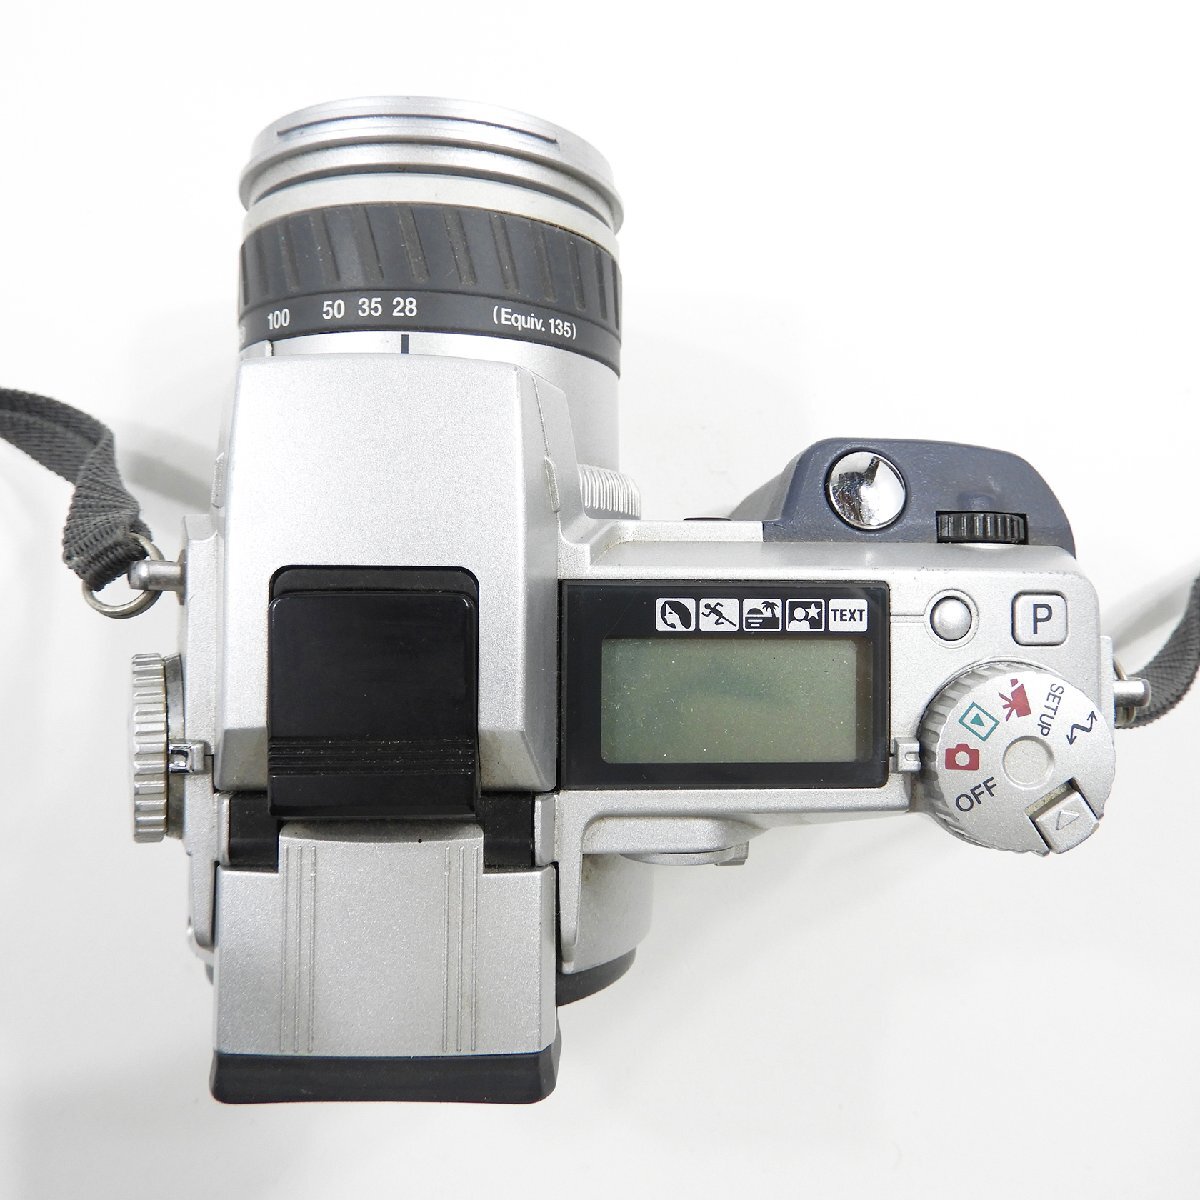 Minolta ミノルタ Dimage 7 デジタルカメラ ジャンク #17545 カメラ 趣味 コレクション デジカメの画像4